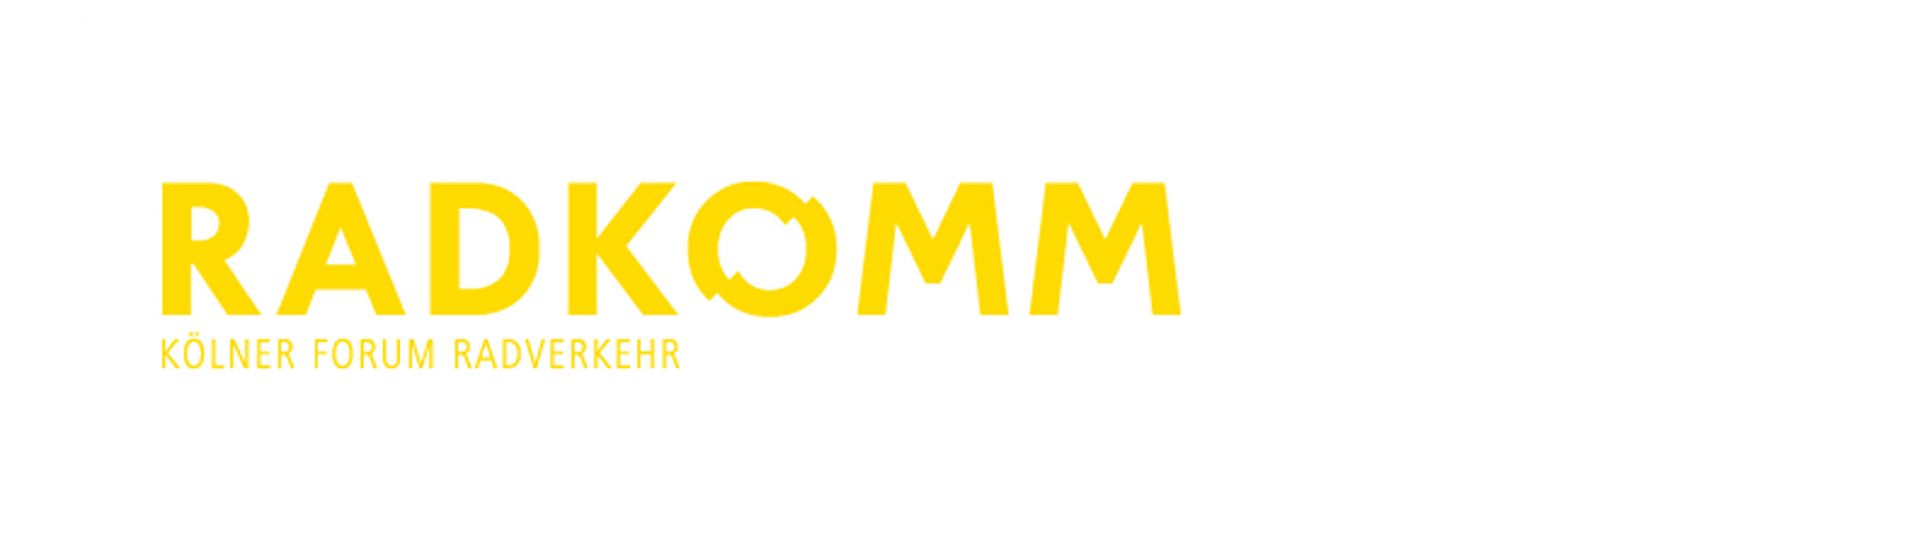 RADKOMM-Logo